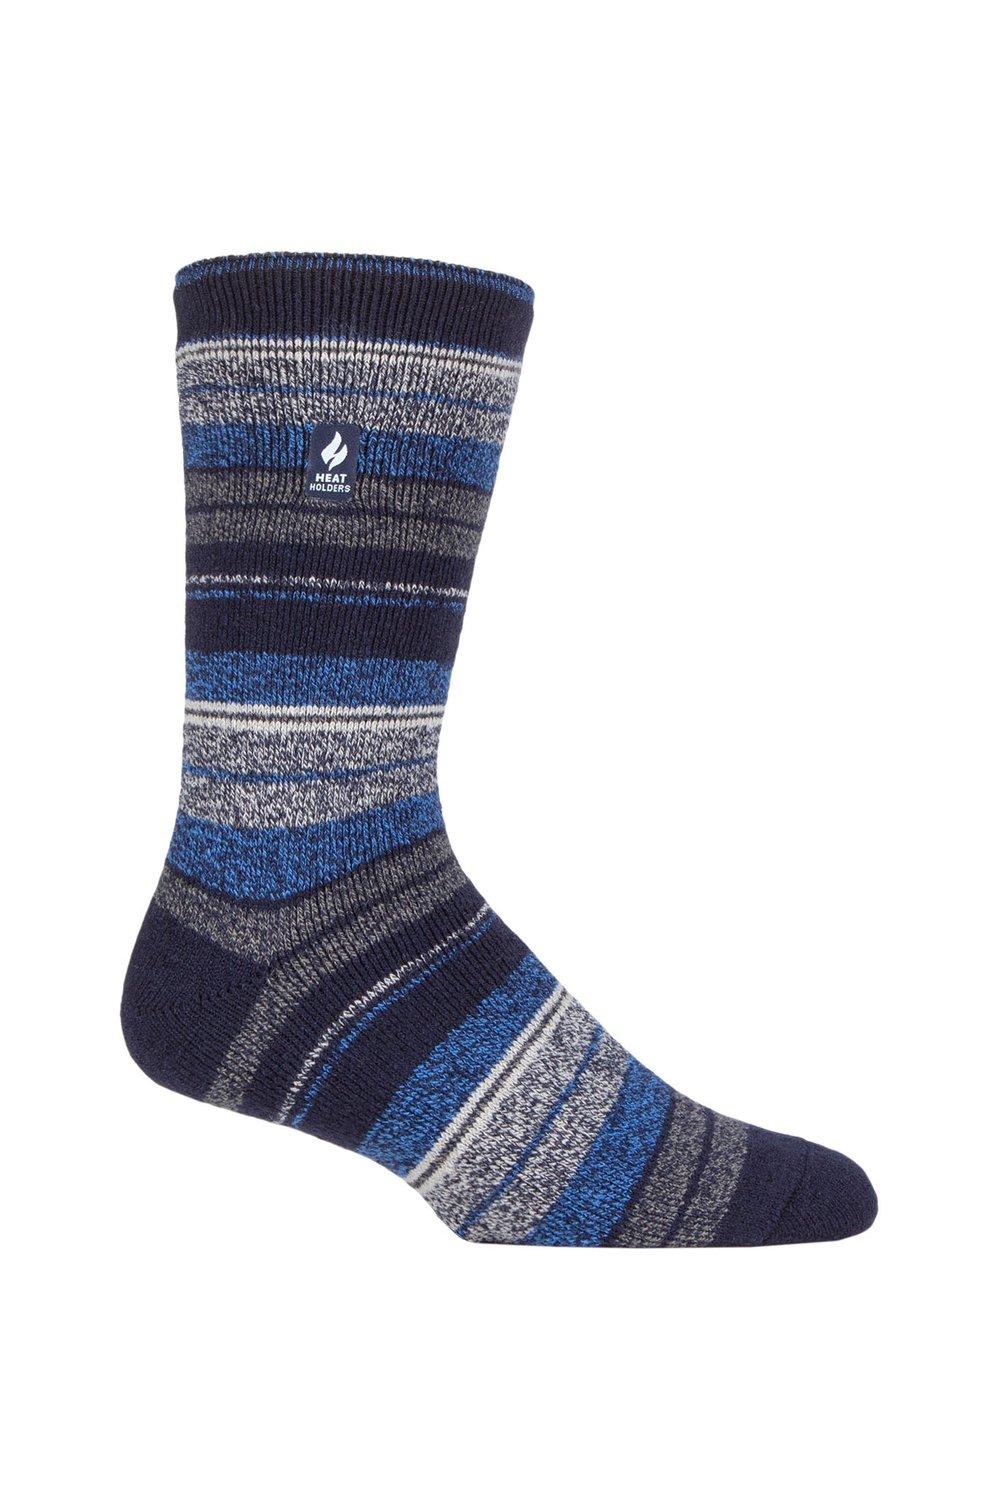 1 пара носков в полоску, с рисунком и узором 1.6 TOG Lite SOCKSHOP Heat Holders, синий